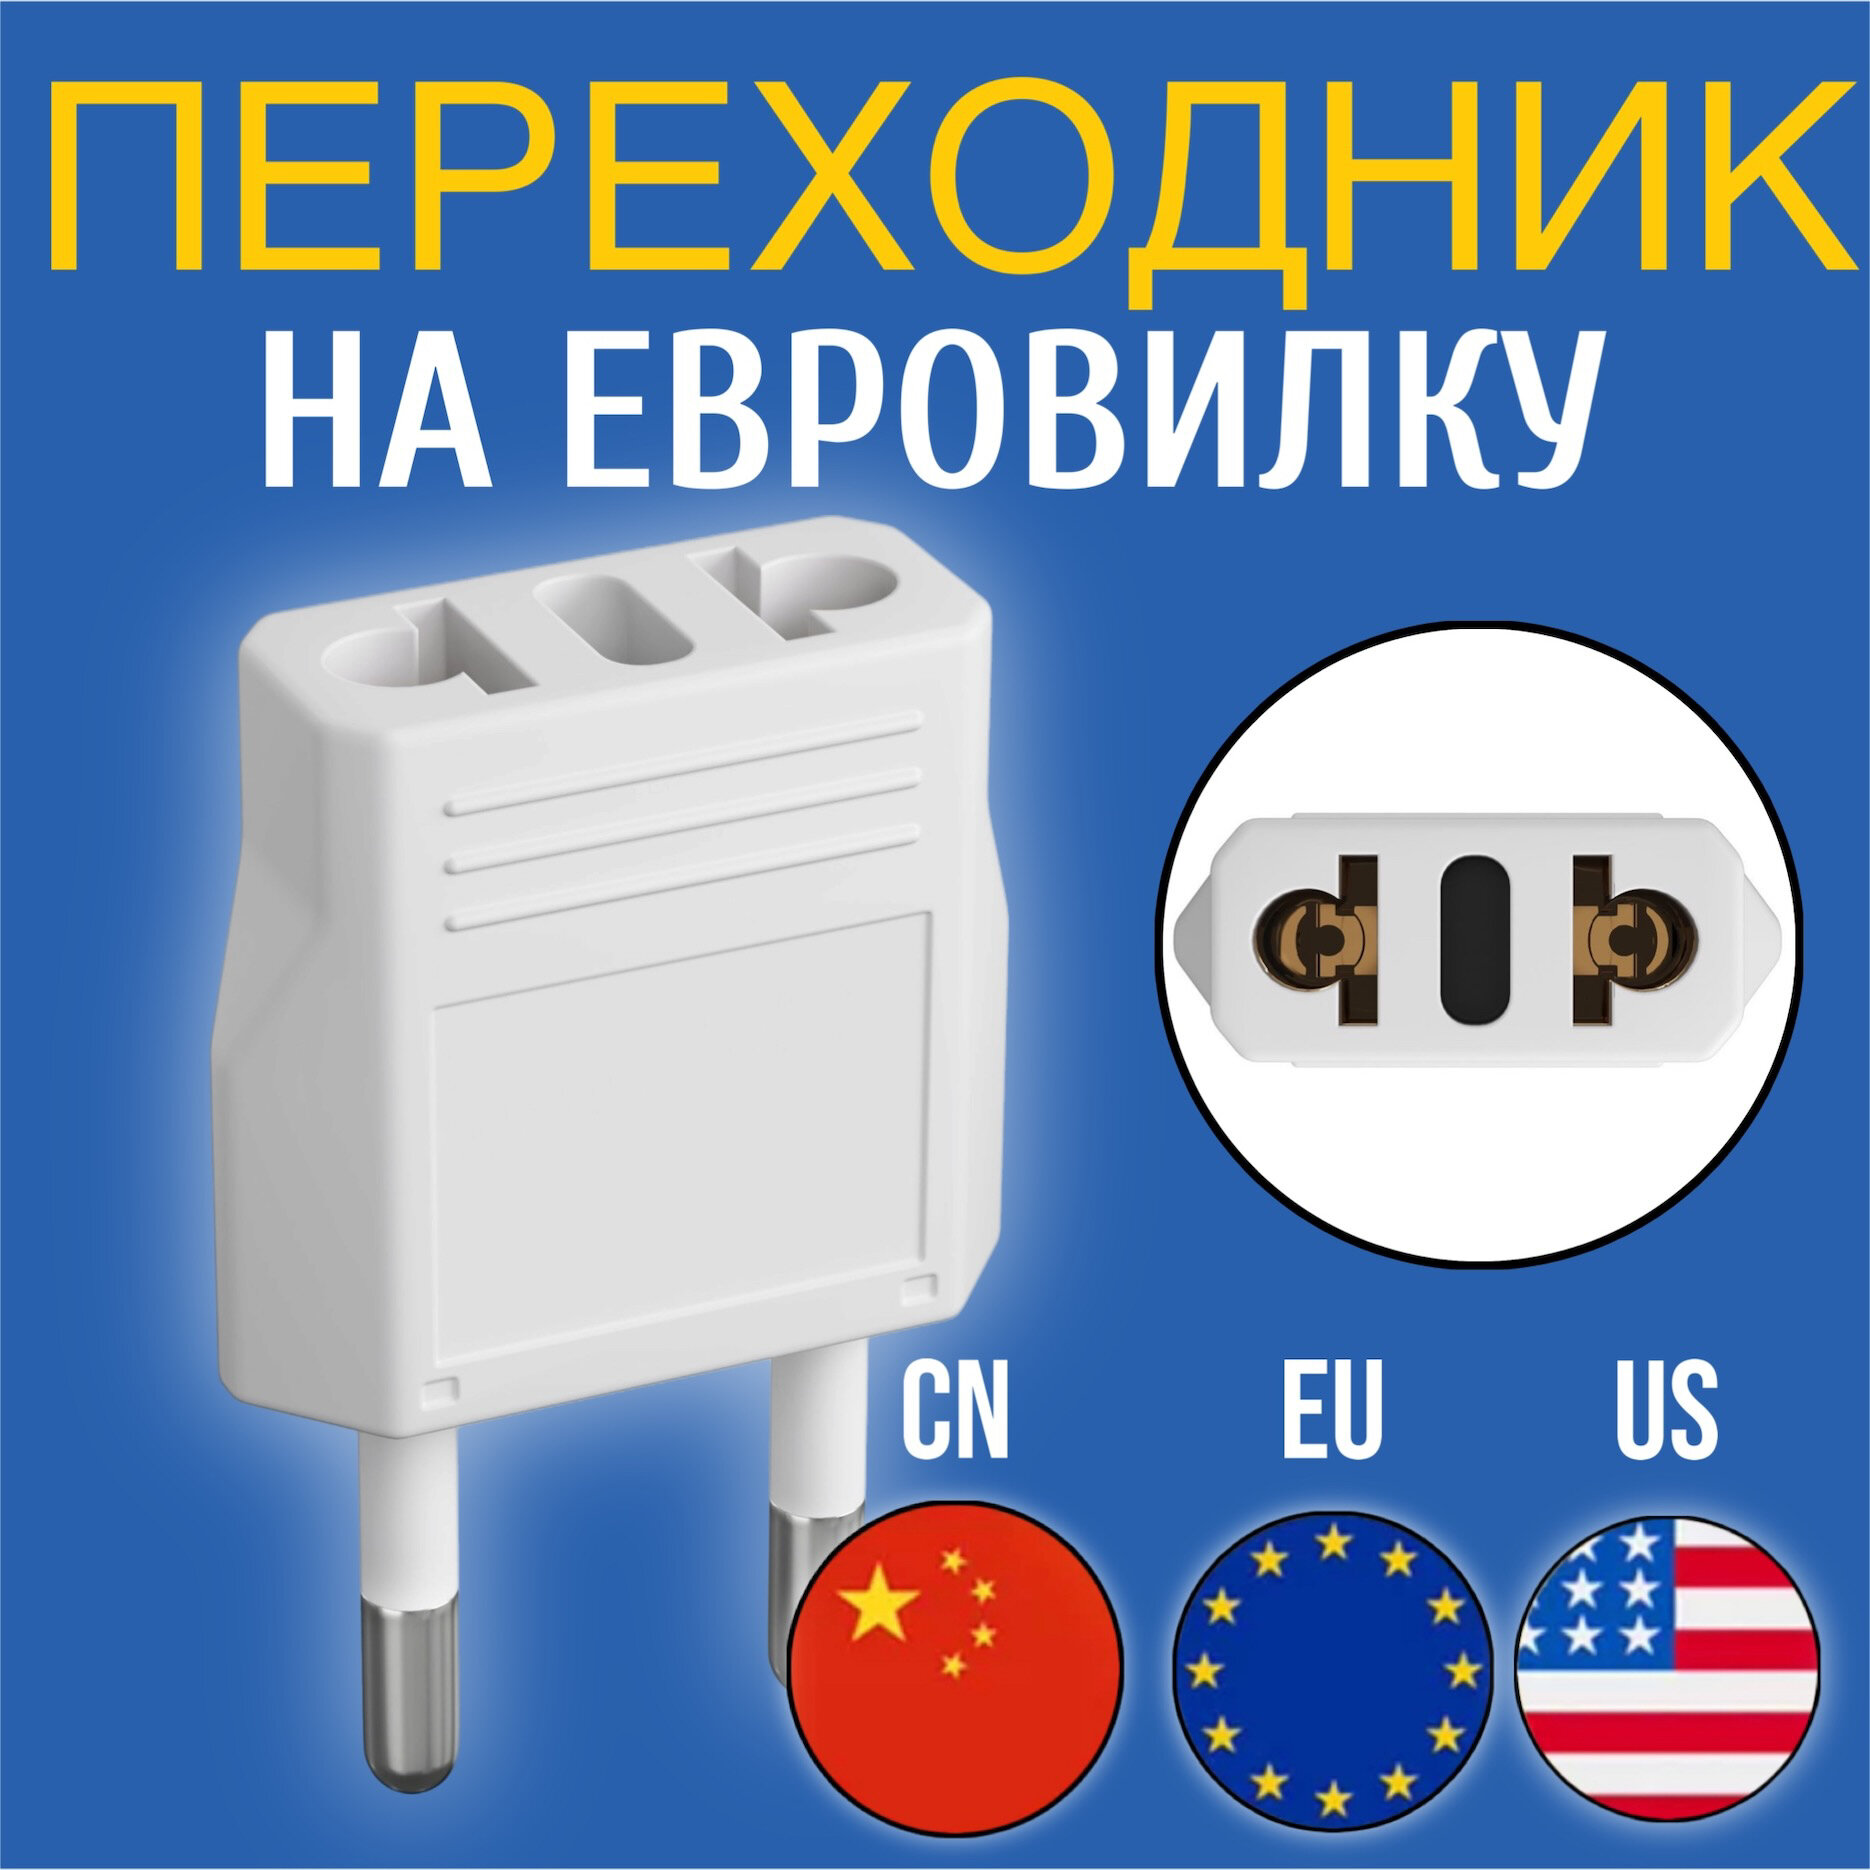 Адаптер сетевой на евровилку, евро розетку GSMIN Travel Adapter A8 переходник для американской, китайской вилки US/CN (250 В, 6А) (Белый)